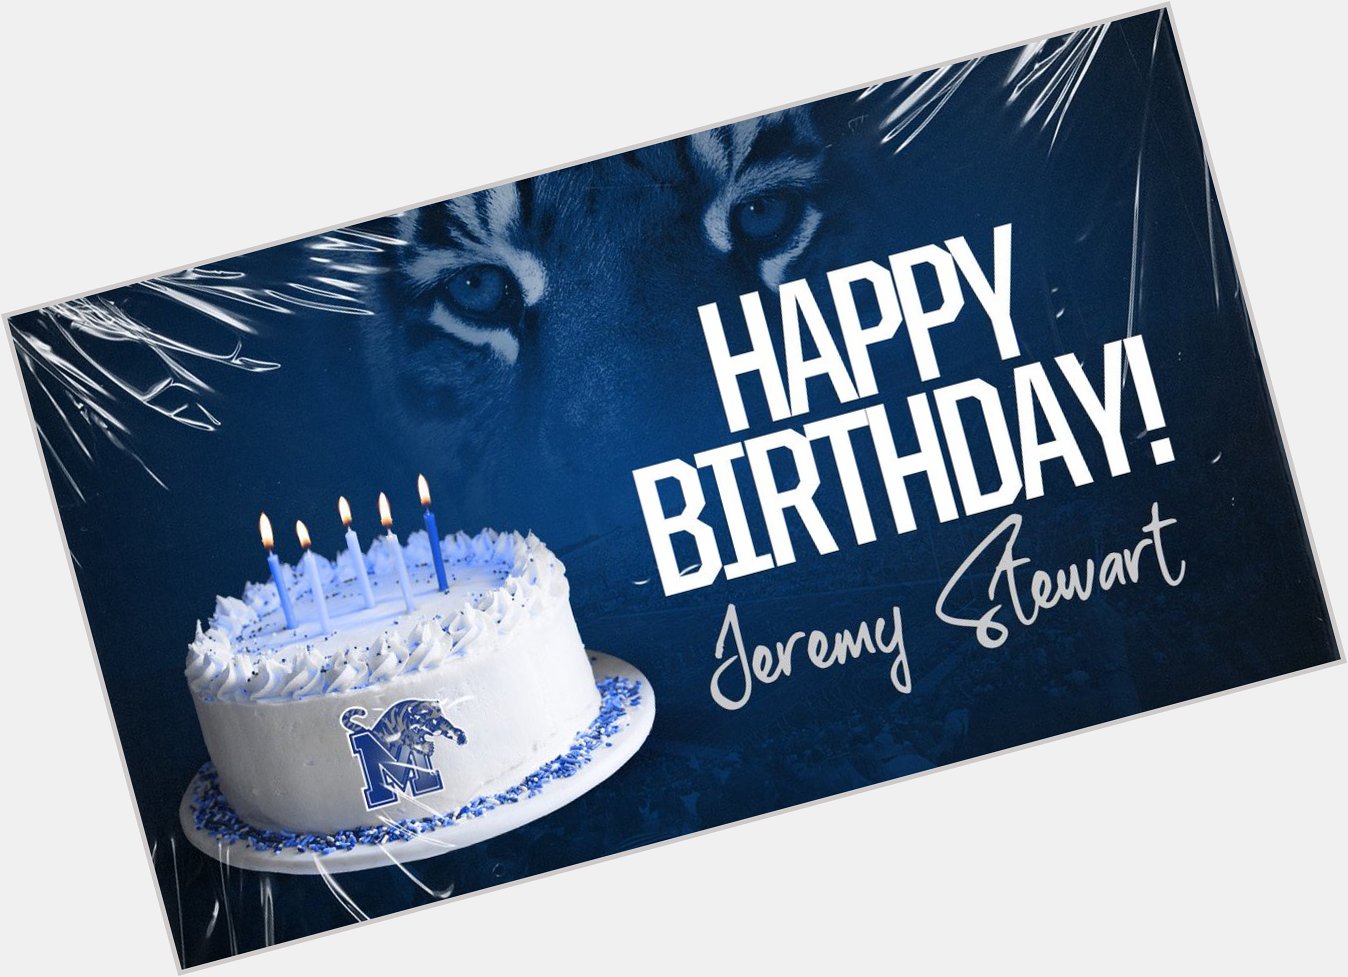 Happy Birthday Jeremy Stewart          